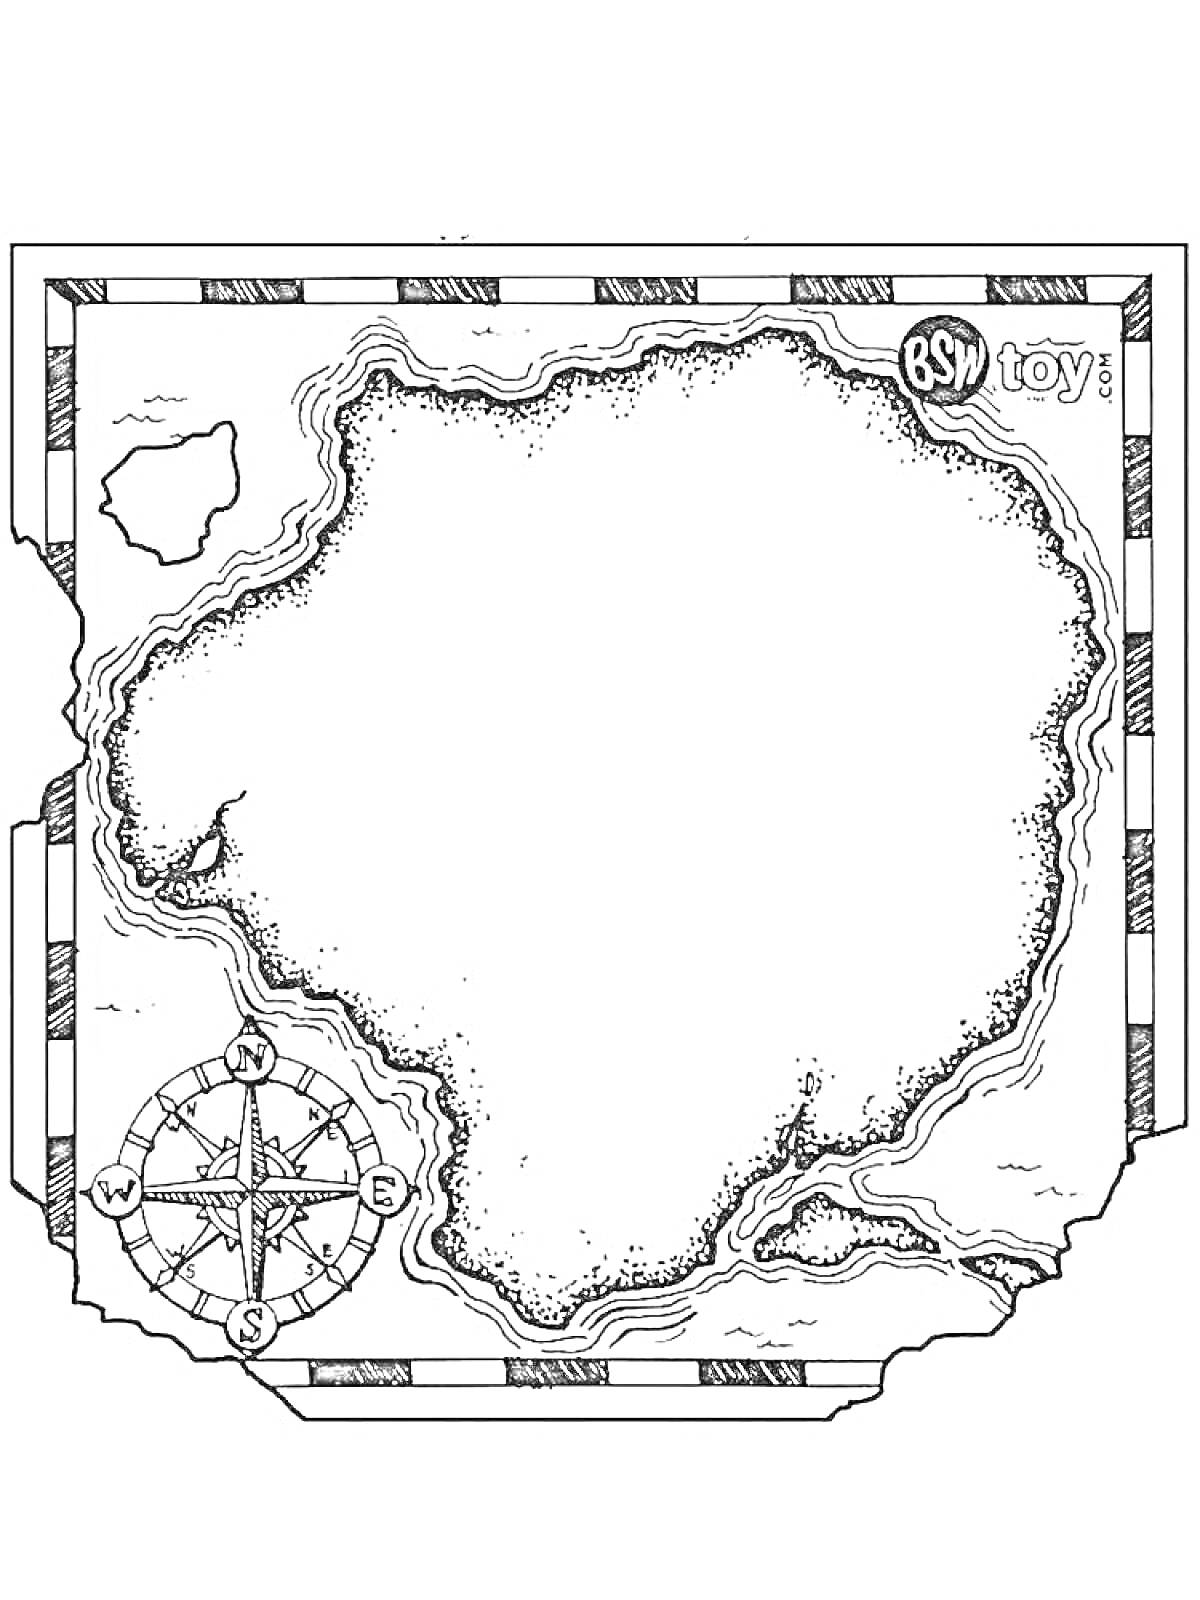 Раскраска Карта сокровищ с островом, окружённым водой, компасом и значком 